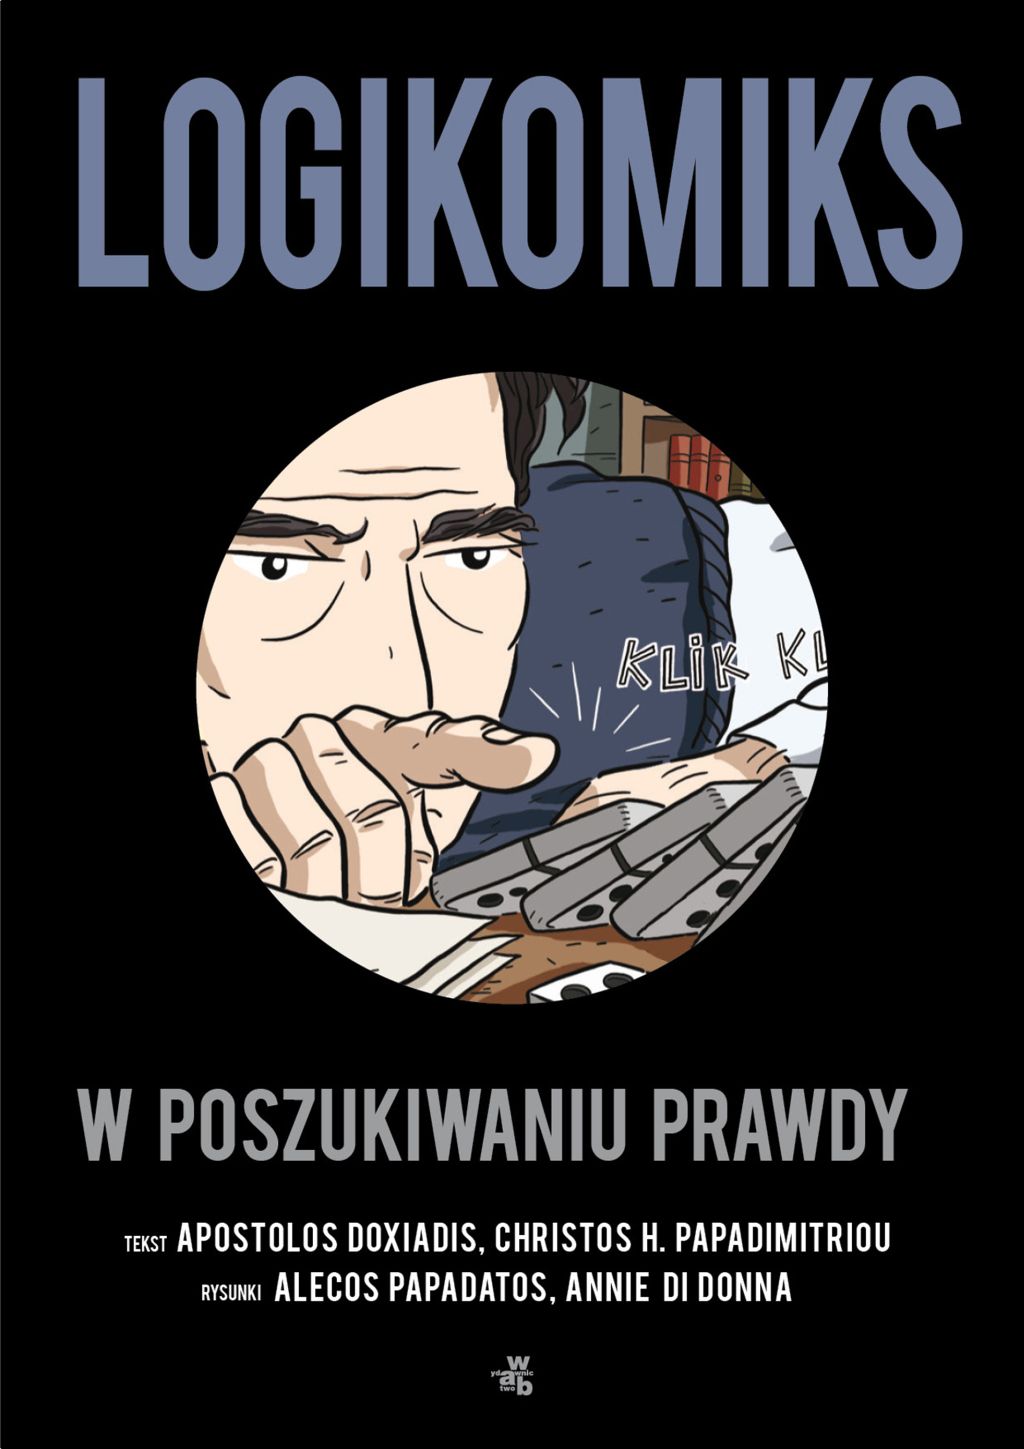 Okładka książki "Logikomis. W poszukiwaniu prawdy" (źródło: materiały prasowe wydawnictwa)